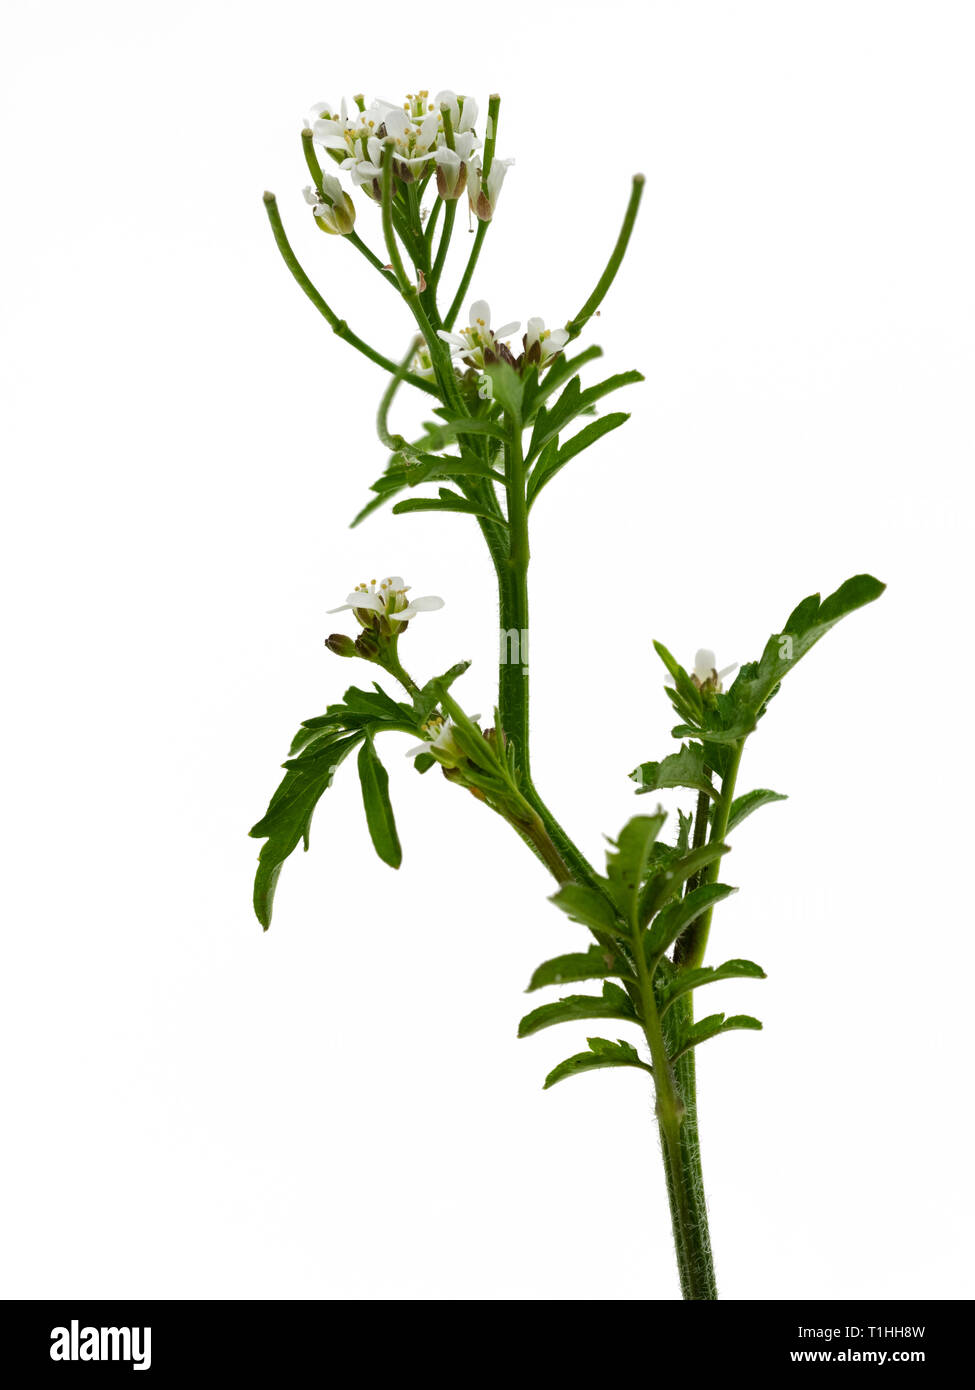 Blütenstengel Der jährliche Wildflower, Cardamine flexuosa, Gewellt bittere Kresse, eine häufige Garten Unkraut. Stockfoto